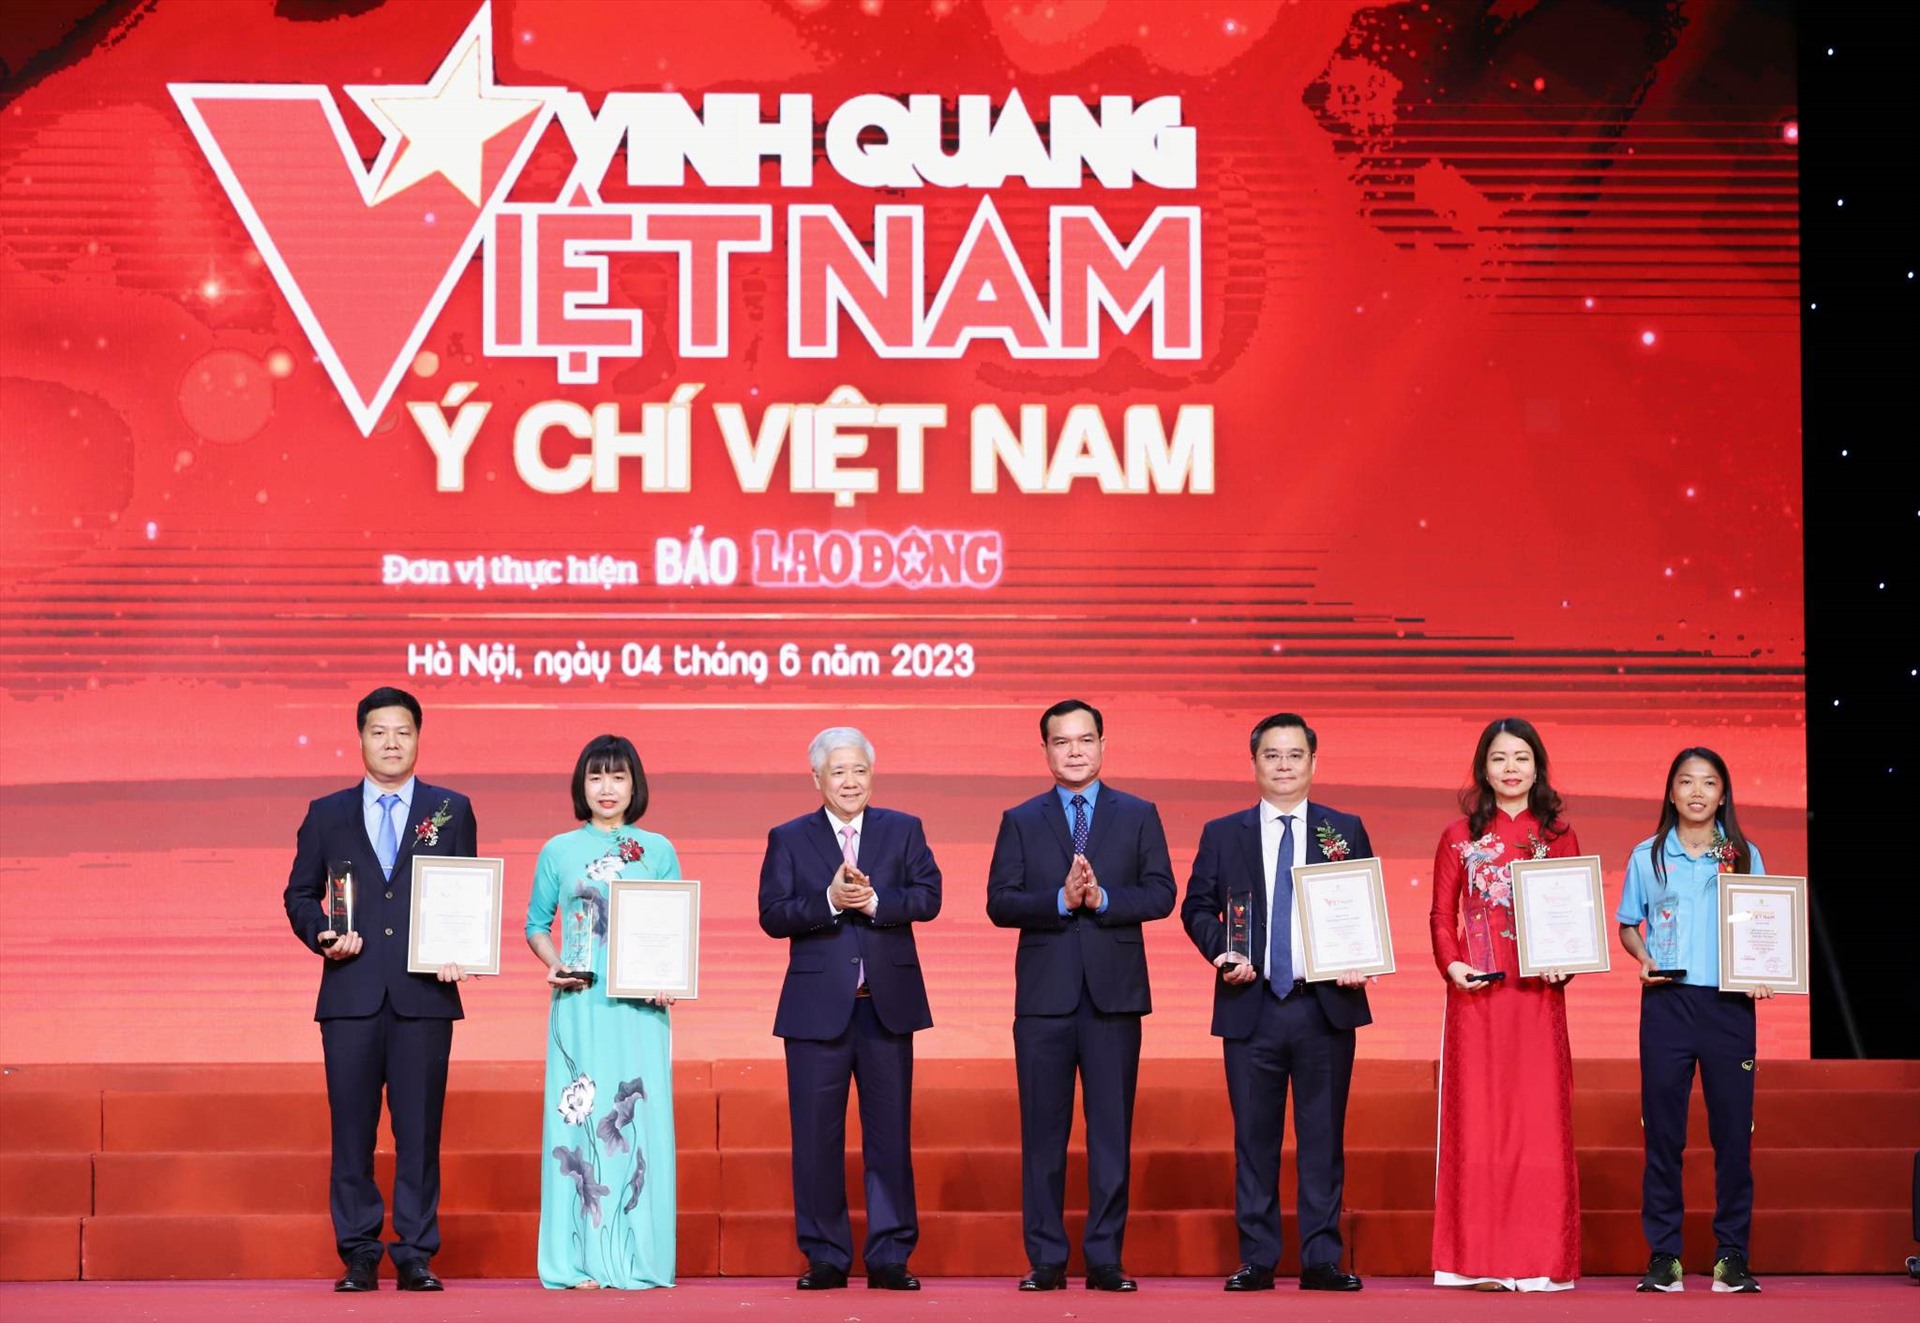 Vinh quang Việt Nam - Ý chí Việt Nam